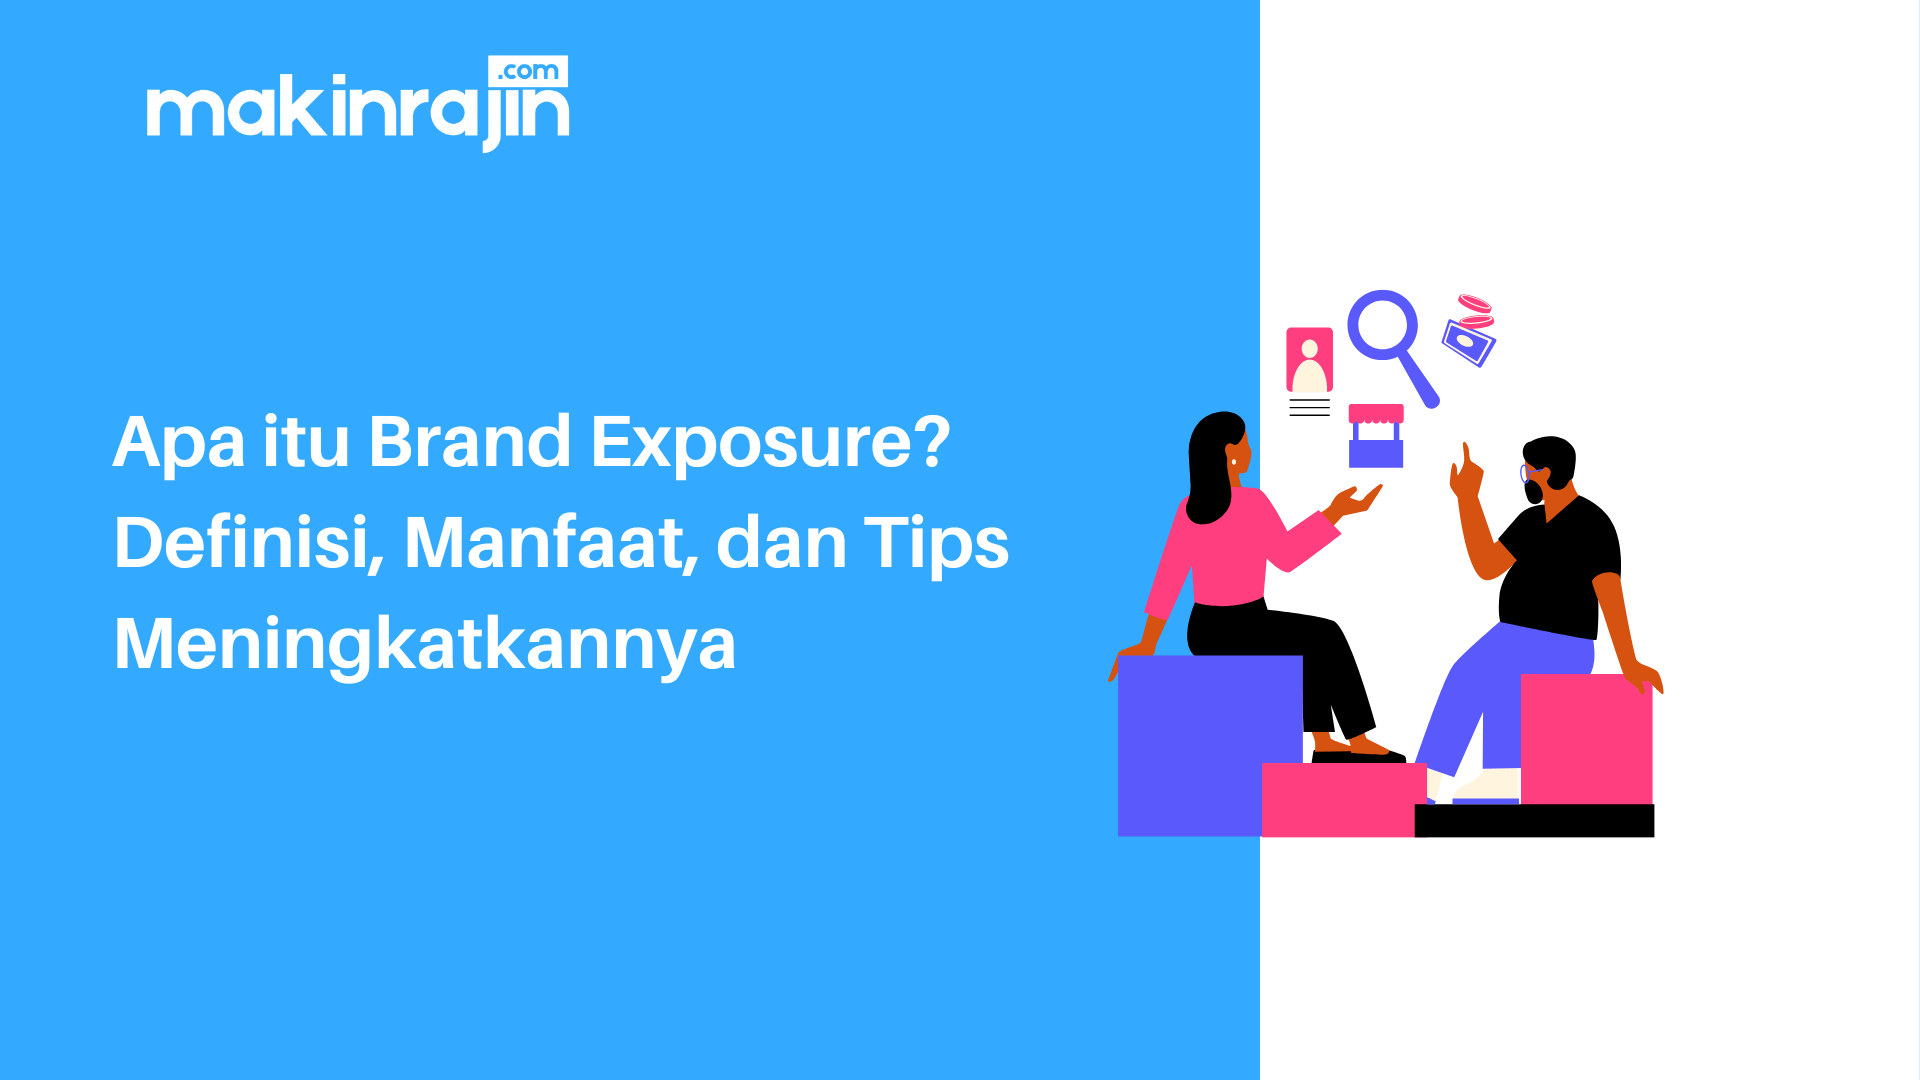 Apa itu Brand Exposure? Definisi, Manfaat, dan Tips Meningkatkannya